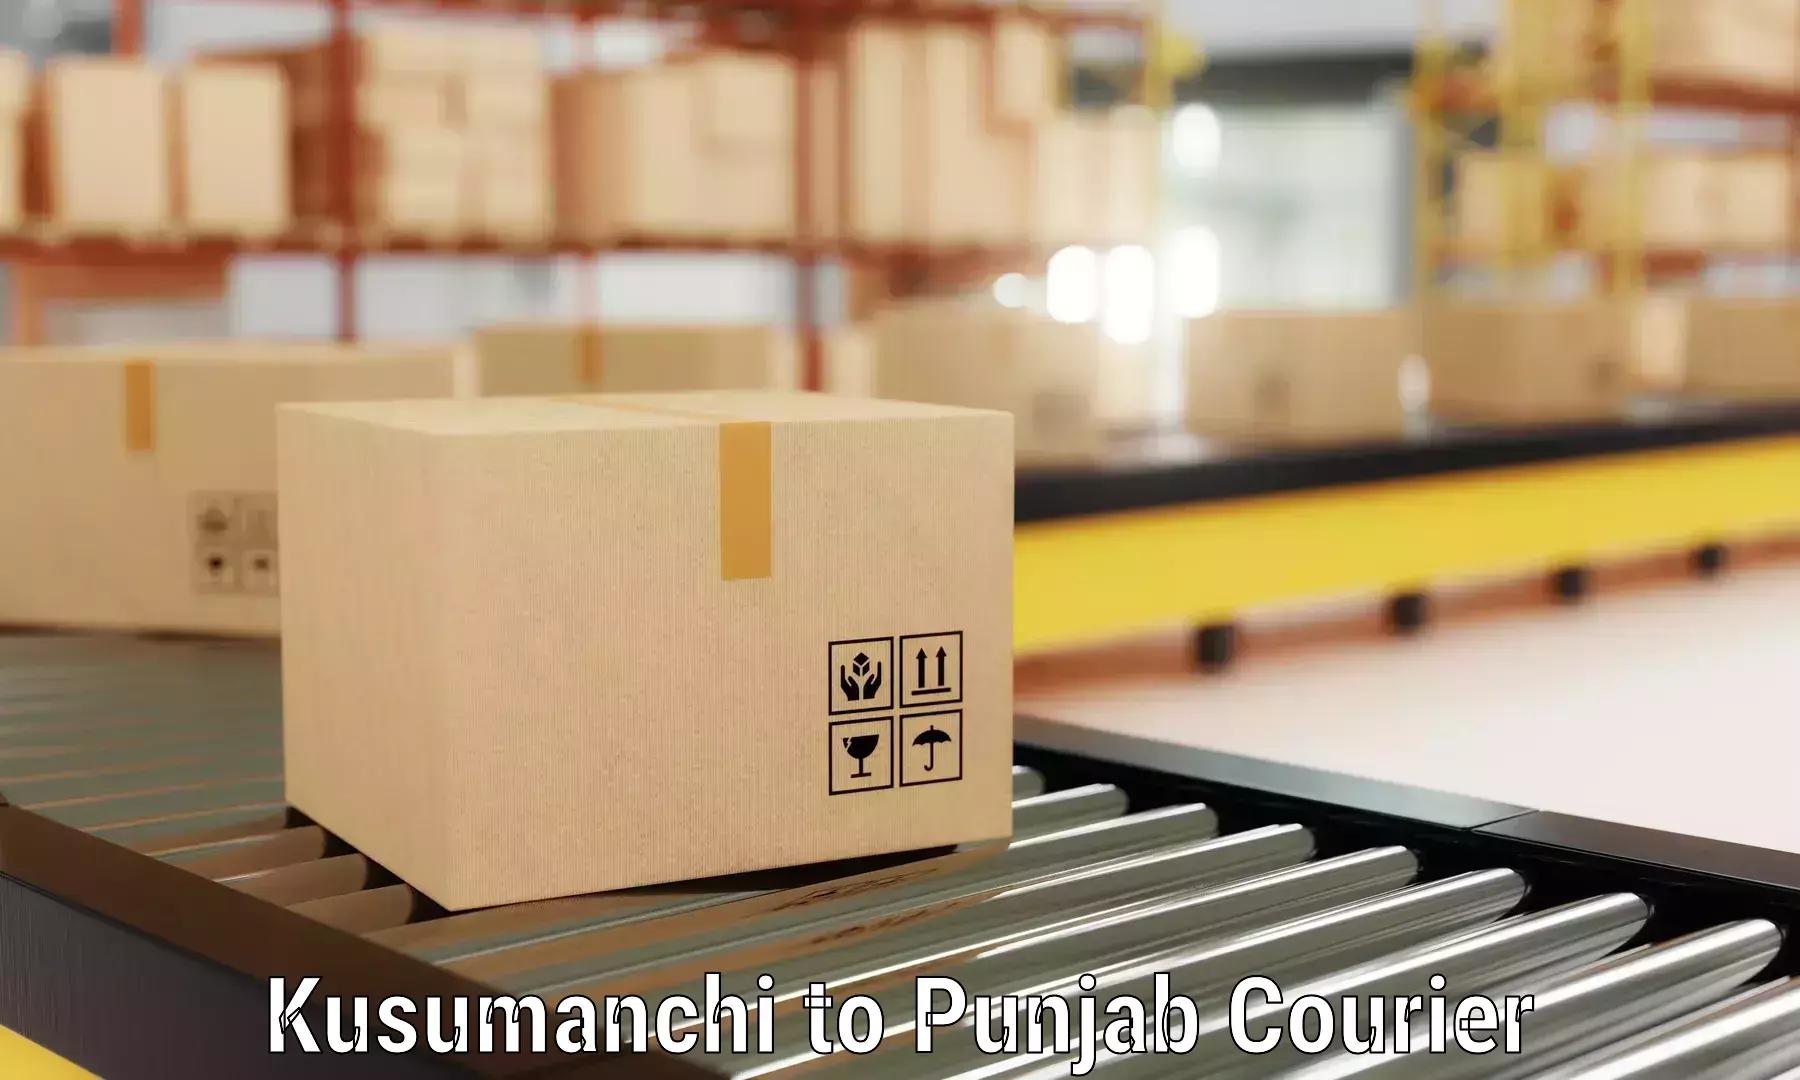 Household goods shipping Kusumanchi to Central University of Punjab Bathinda